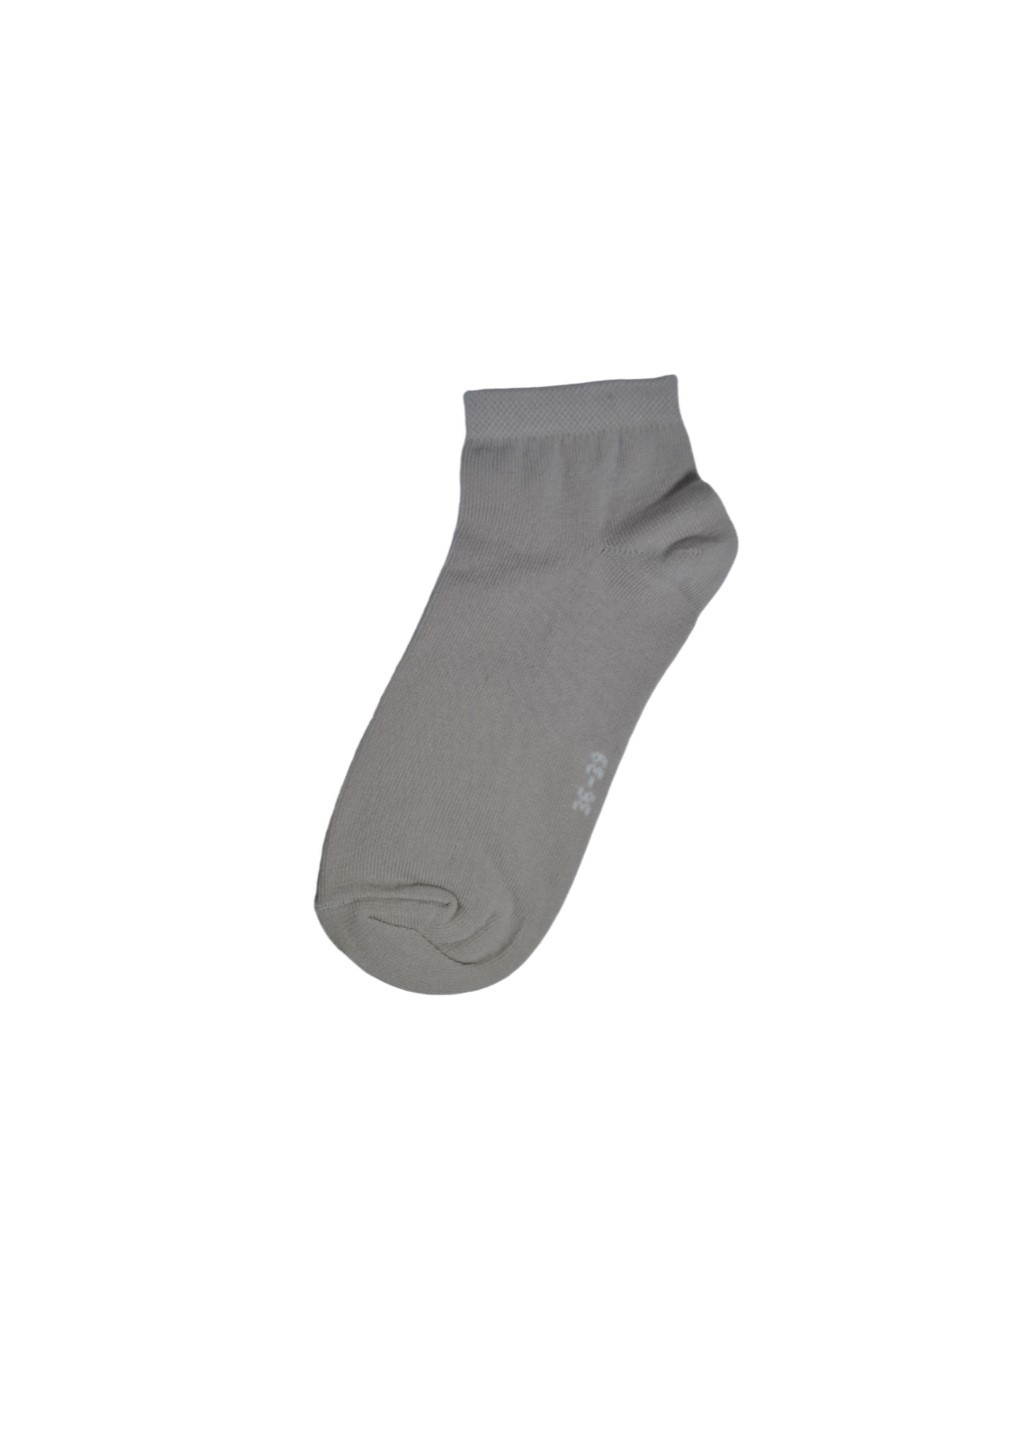 RFT Шкарпетки жін. демі/RT1312-023/36-39/бежевий Siela rt1312-023-шт (260063087)